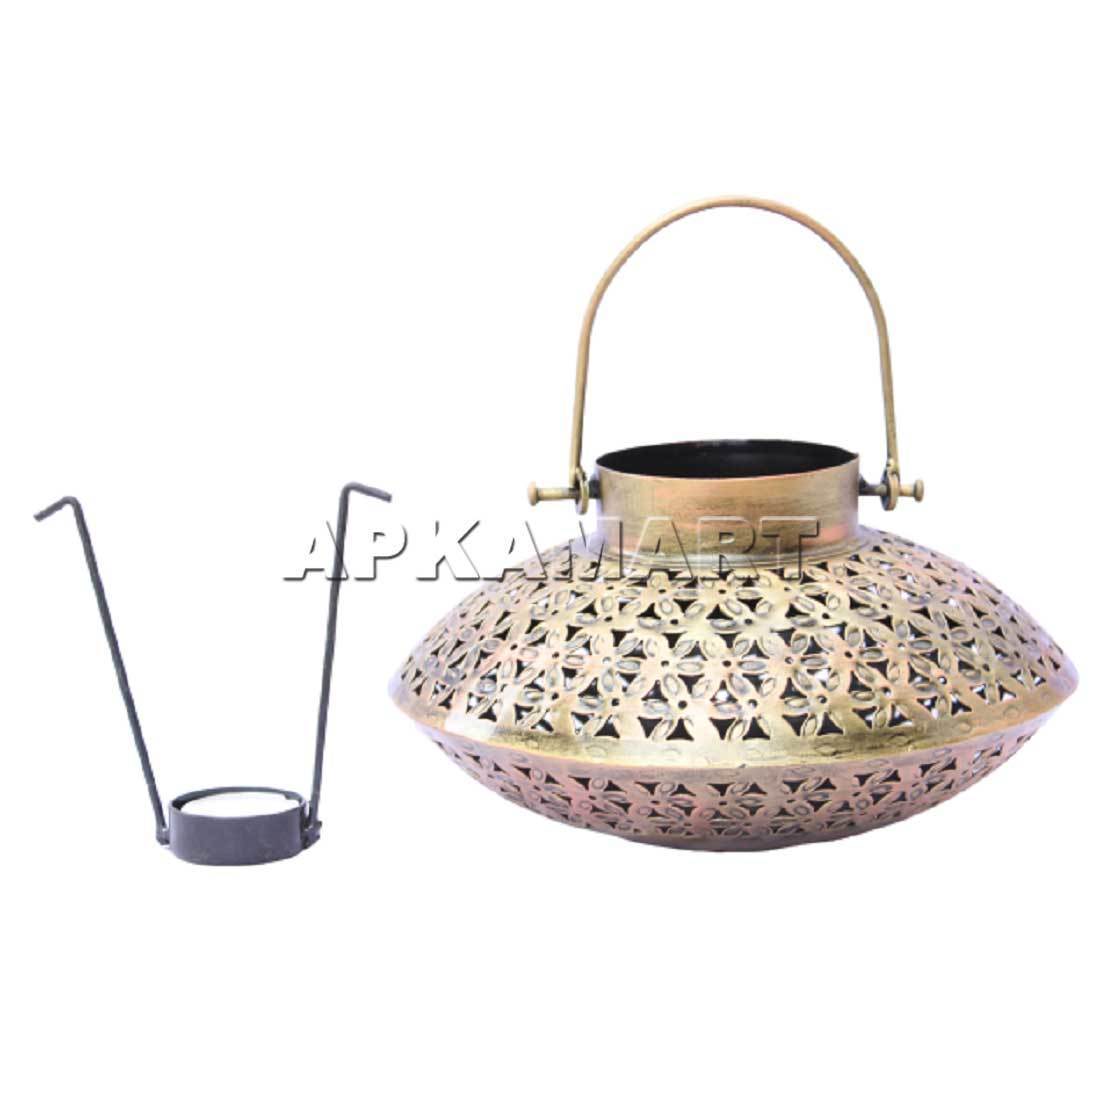 Handi Design Tea Light Holder- Apkamart #style_Style -1